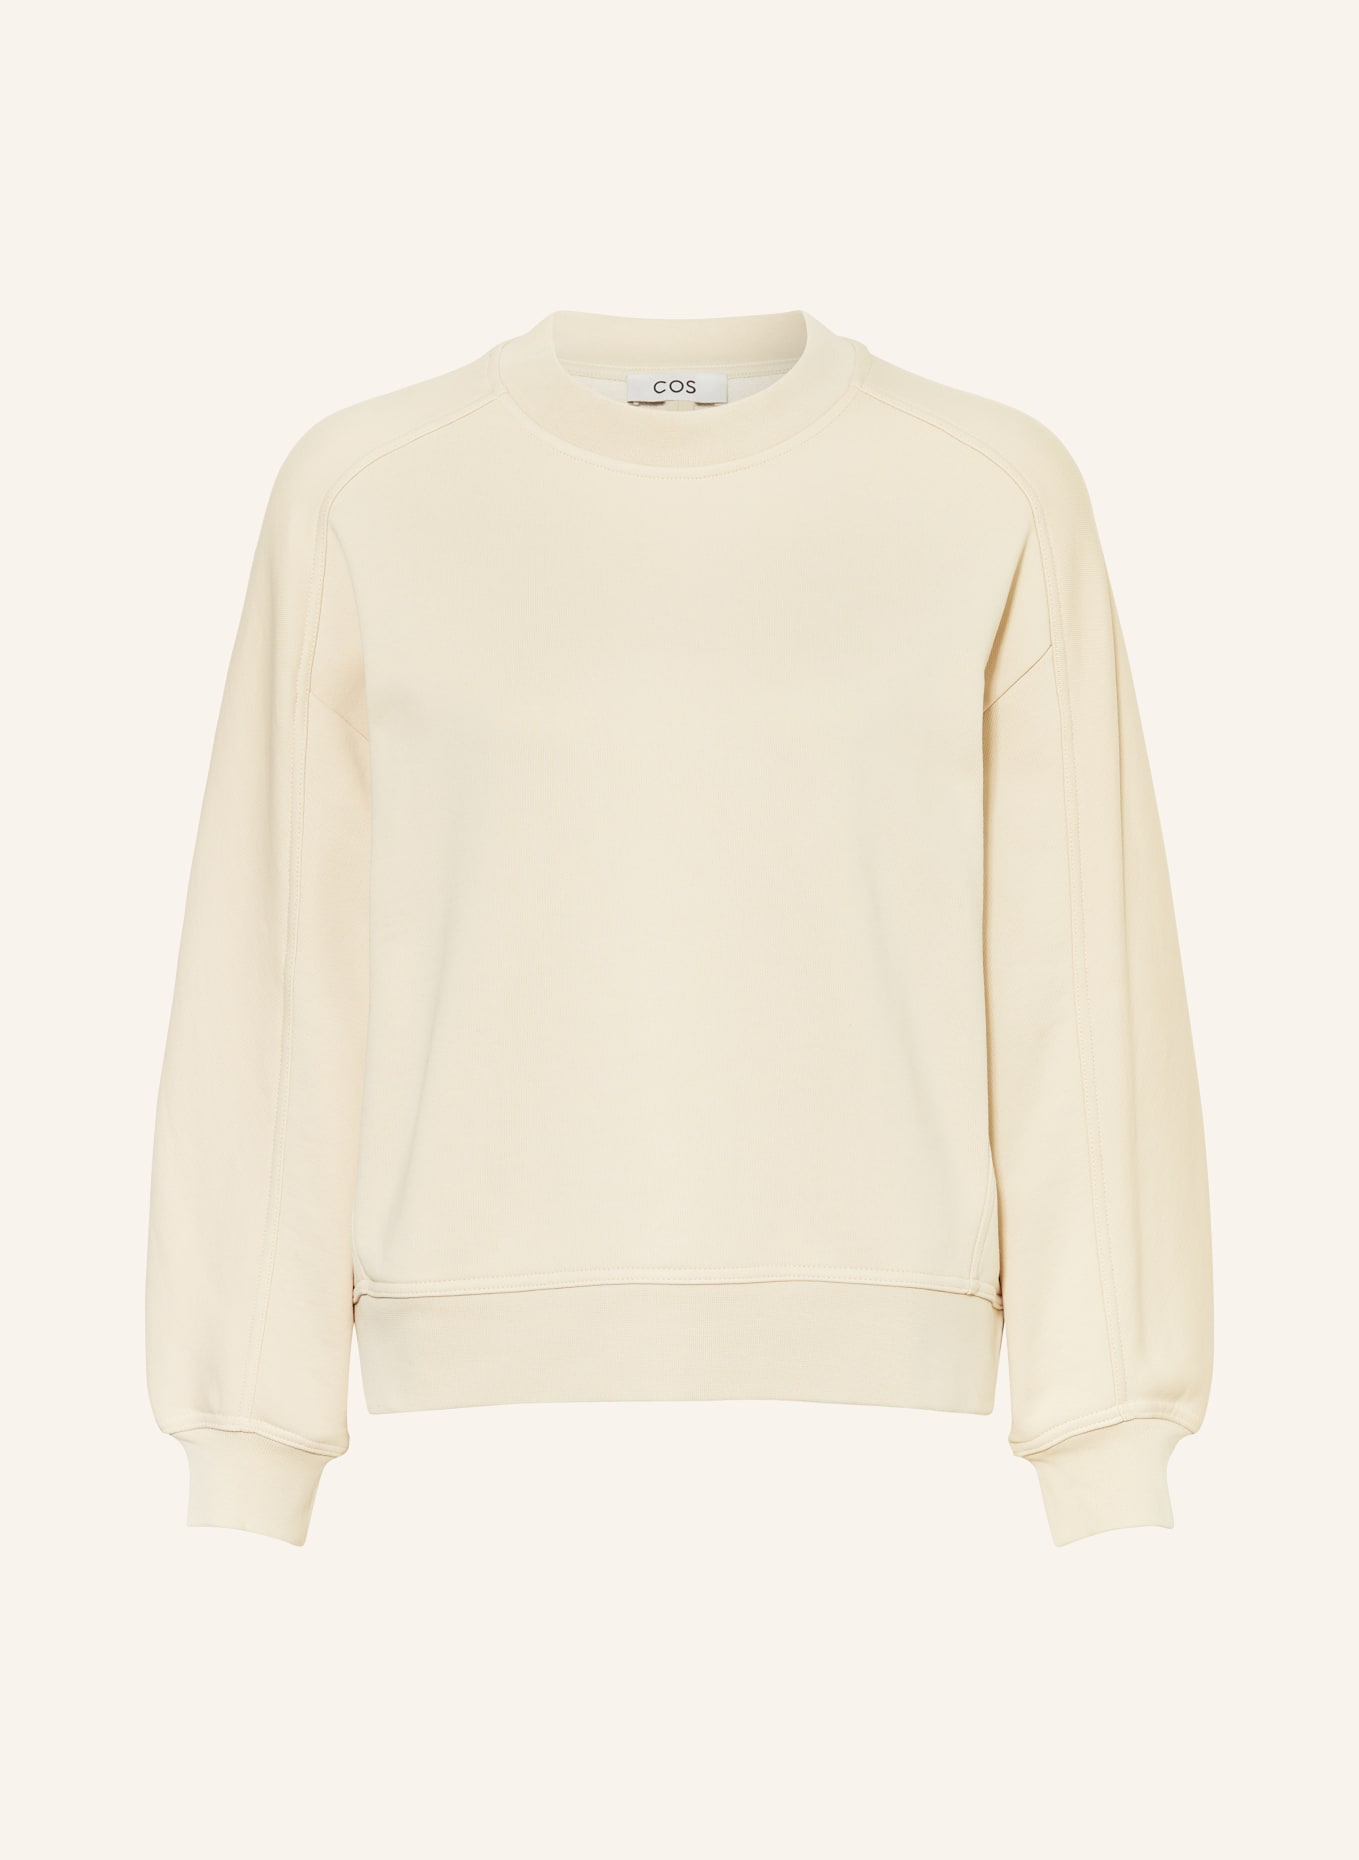 COS Sweatshirt, Color: BEIGE (Image 1)